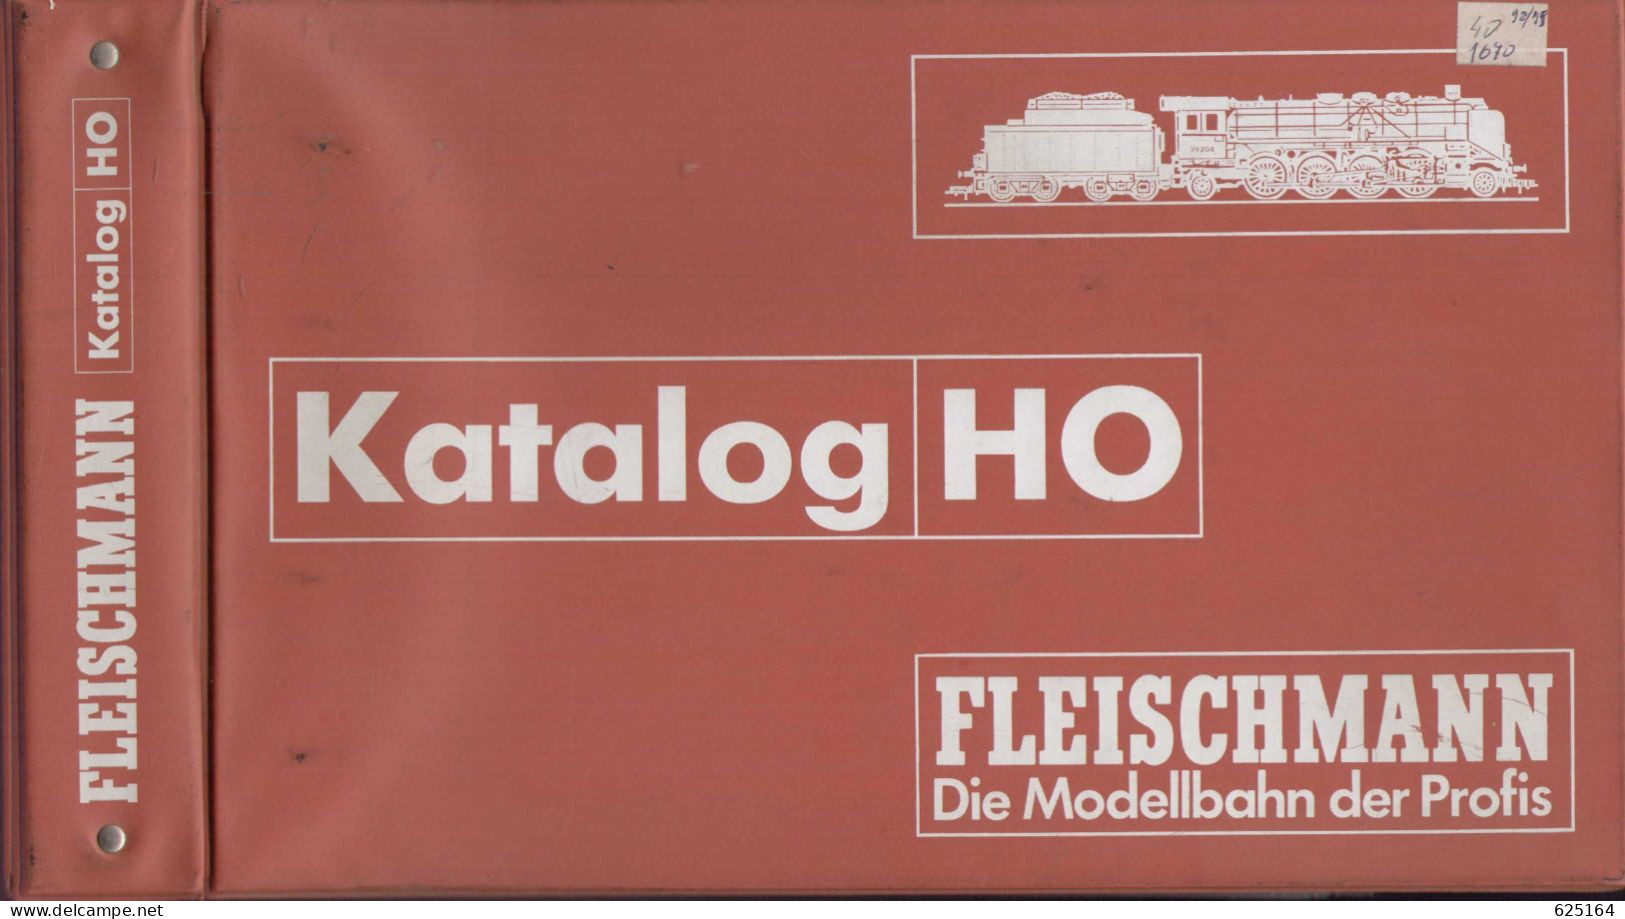 Catalogue FLEISCHMANN 1998/99 Händlerkatalog HO Die Modellbahn Der Profis Mit Original Ordner - Allemand